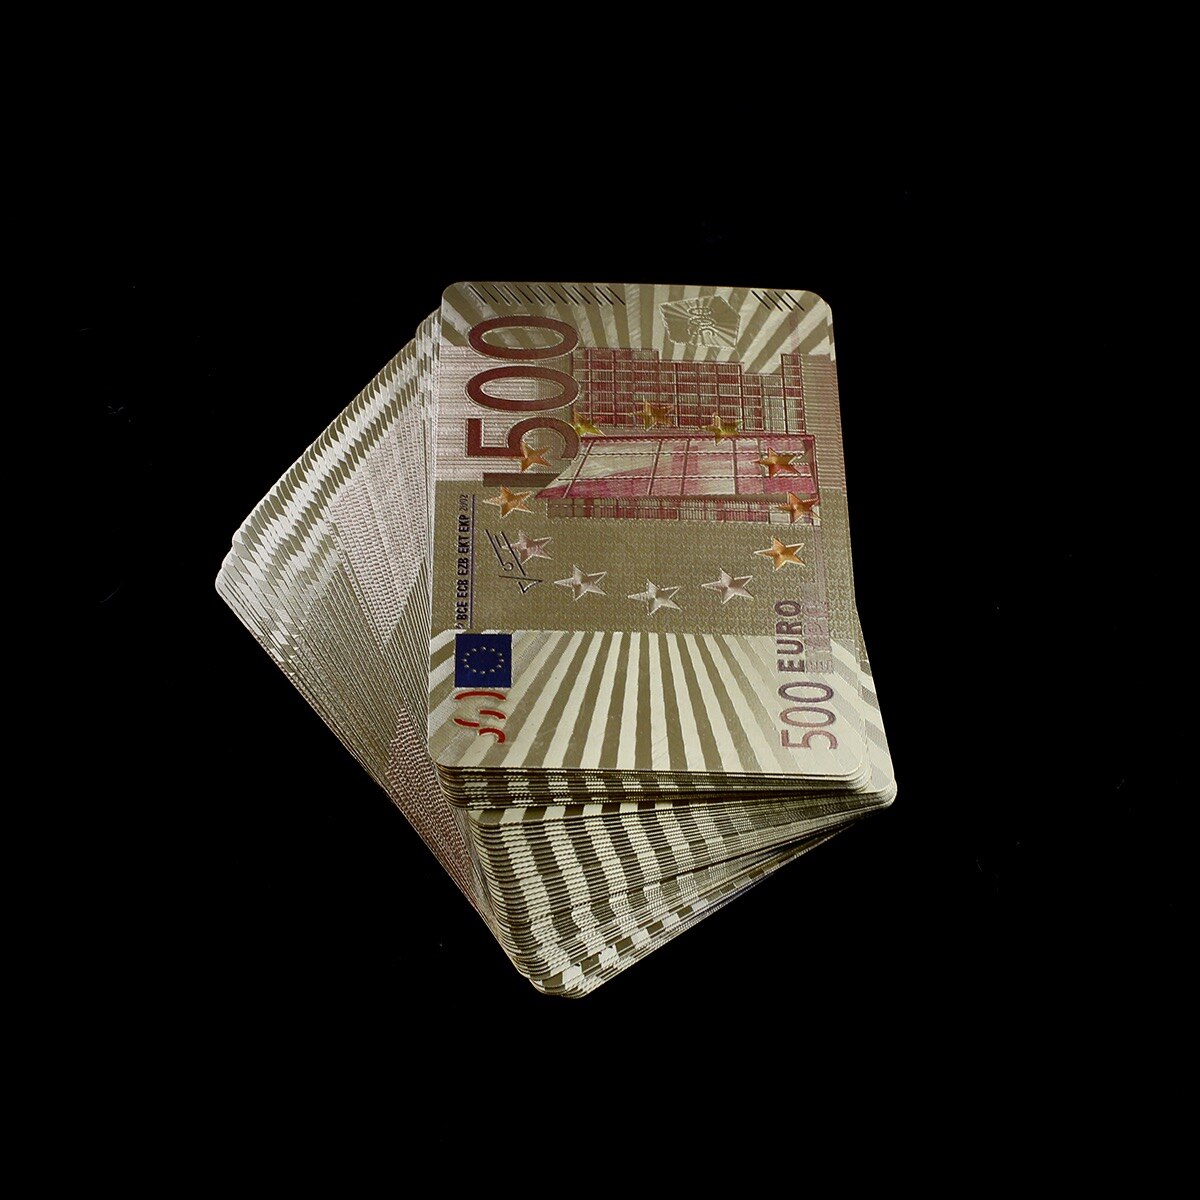 Mania Charles Keasing Excavation Carti de joc Euro, Gold, Oem, 54 carti - eMAG.ro